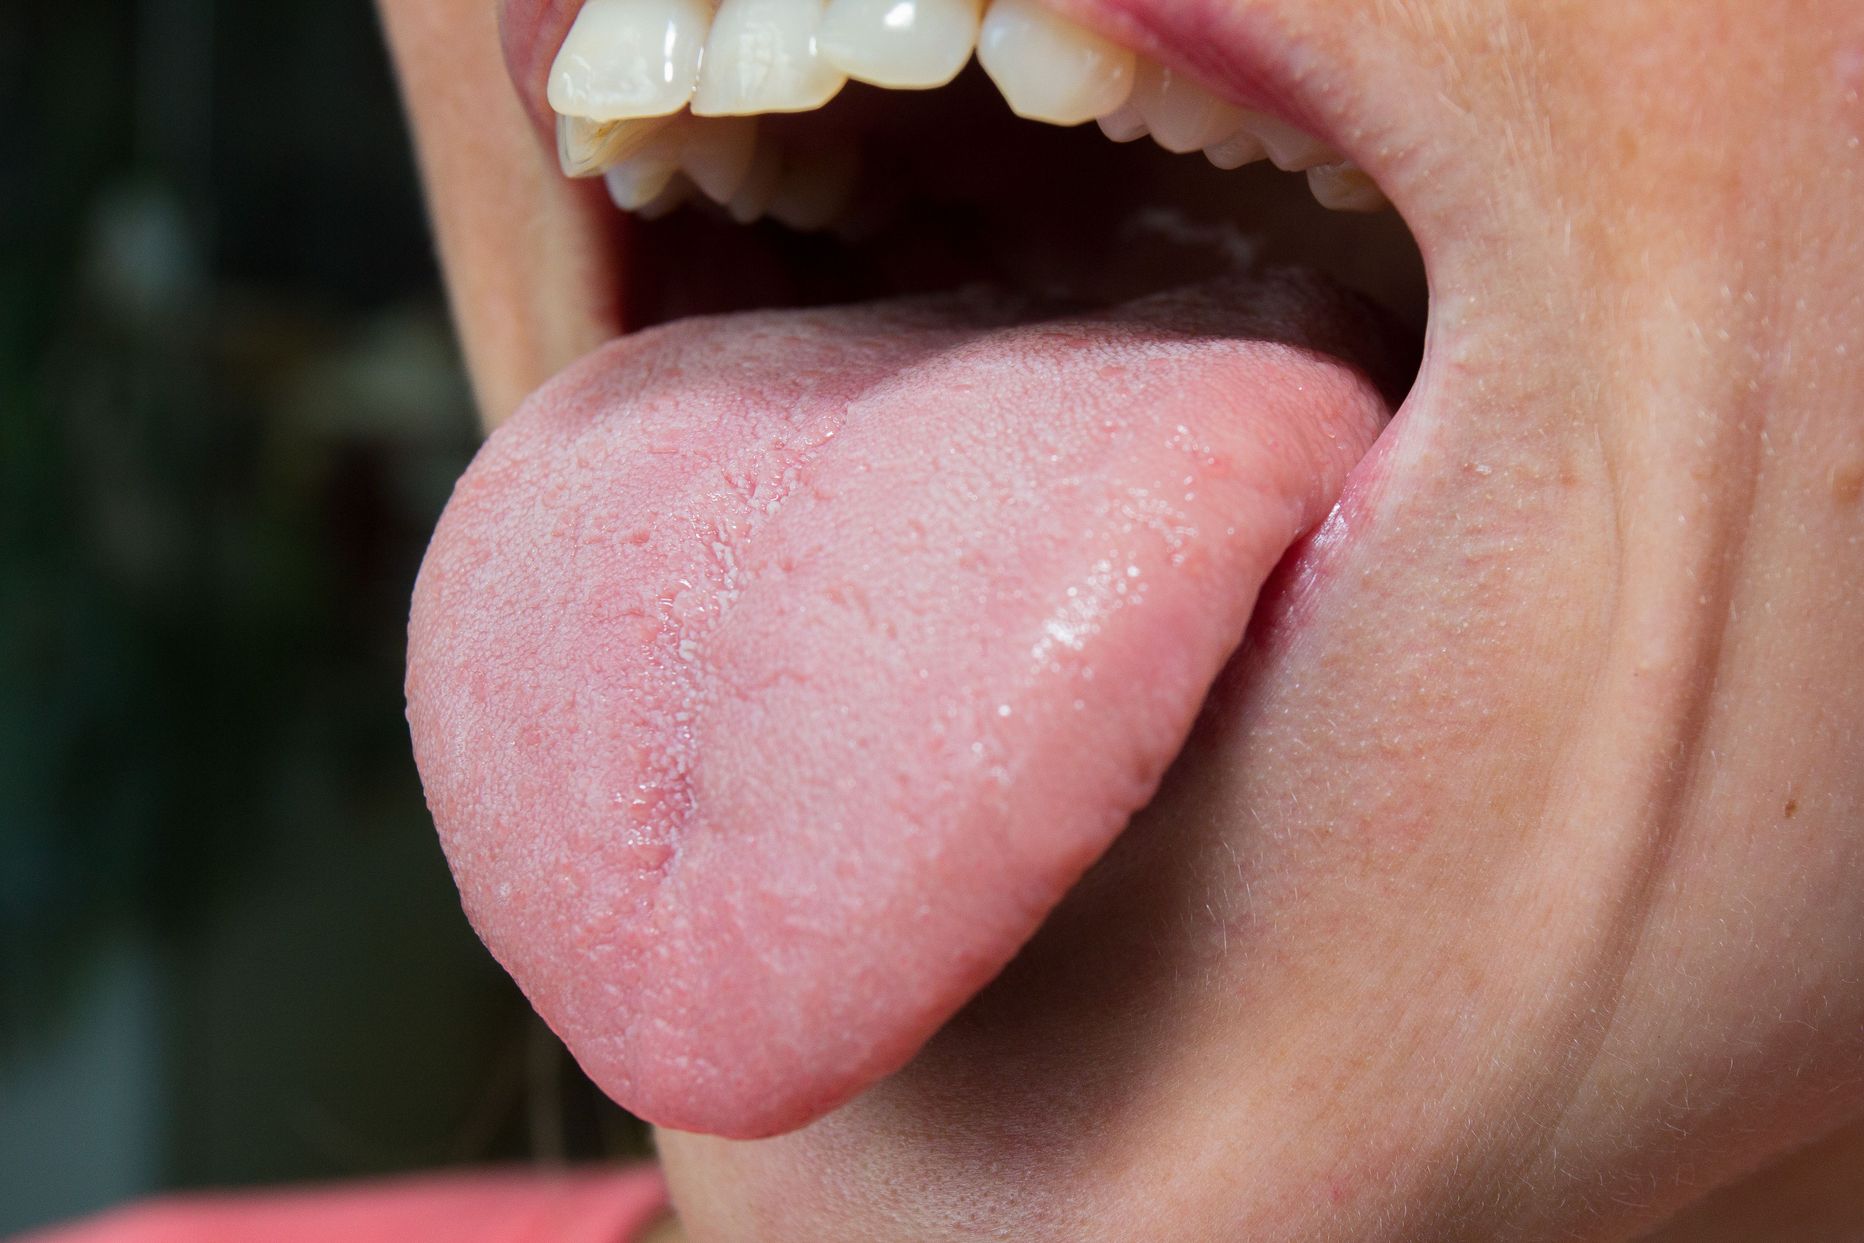 Suust tulev lõhn viitab sageli tõsisemale haigusele kui väike hambaauk.